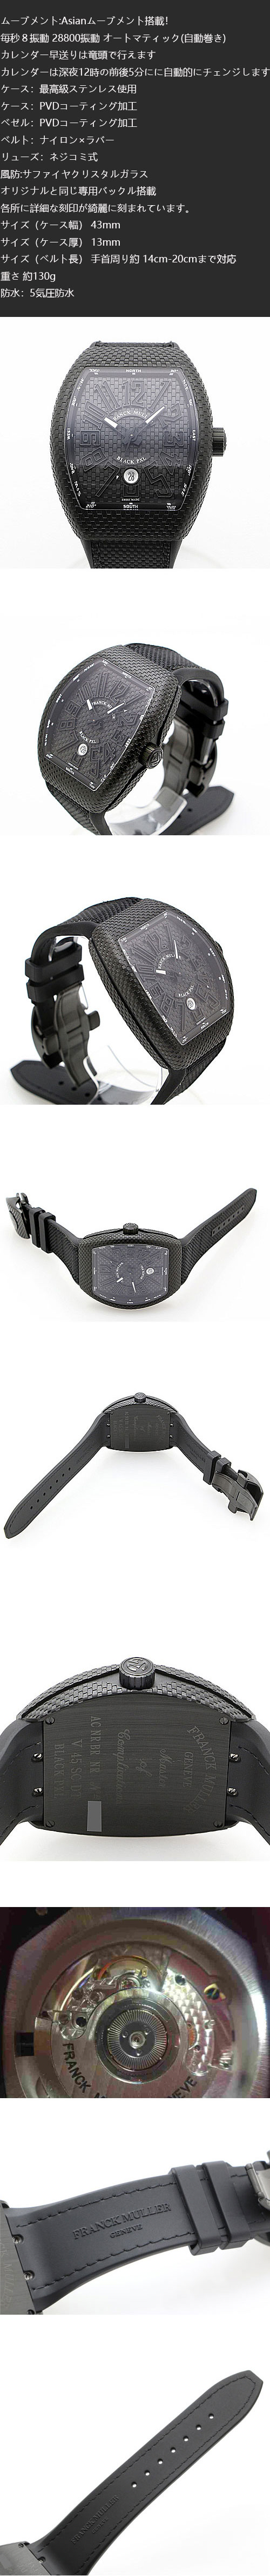 フランク・ミュラー ヴァンガード ブラックピクセル V45SCDT BLACK PXL 新品コピー時計